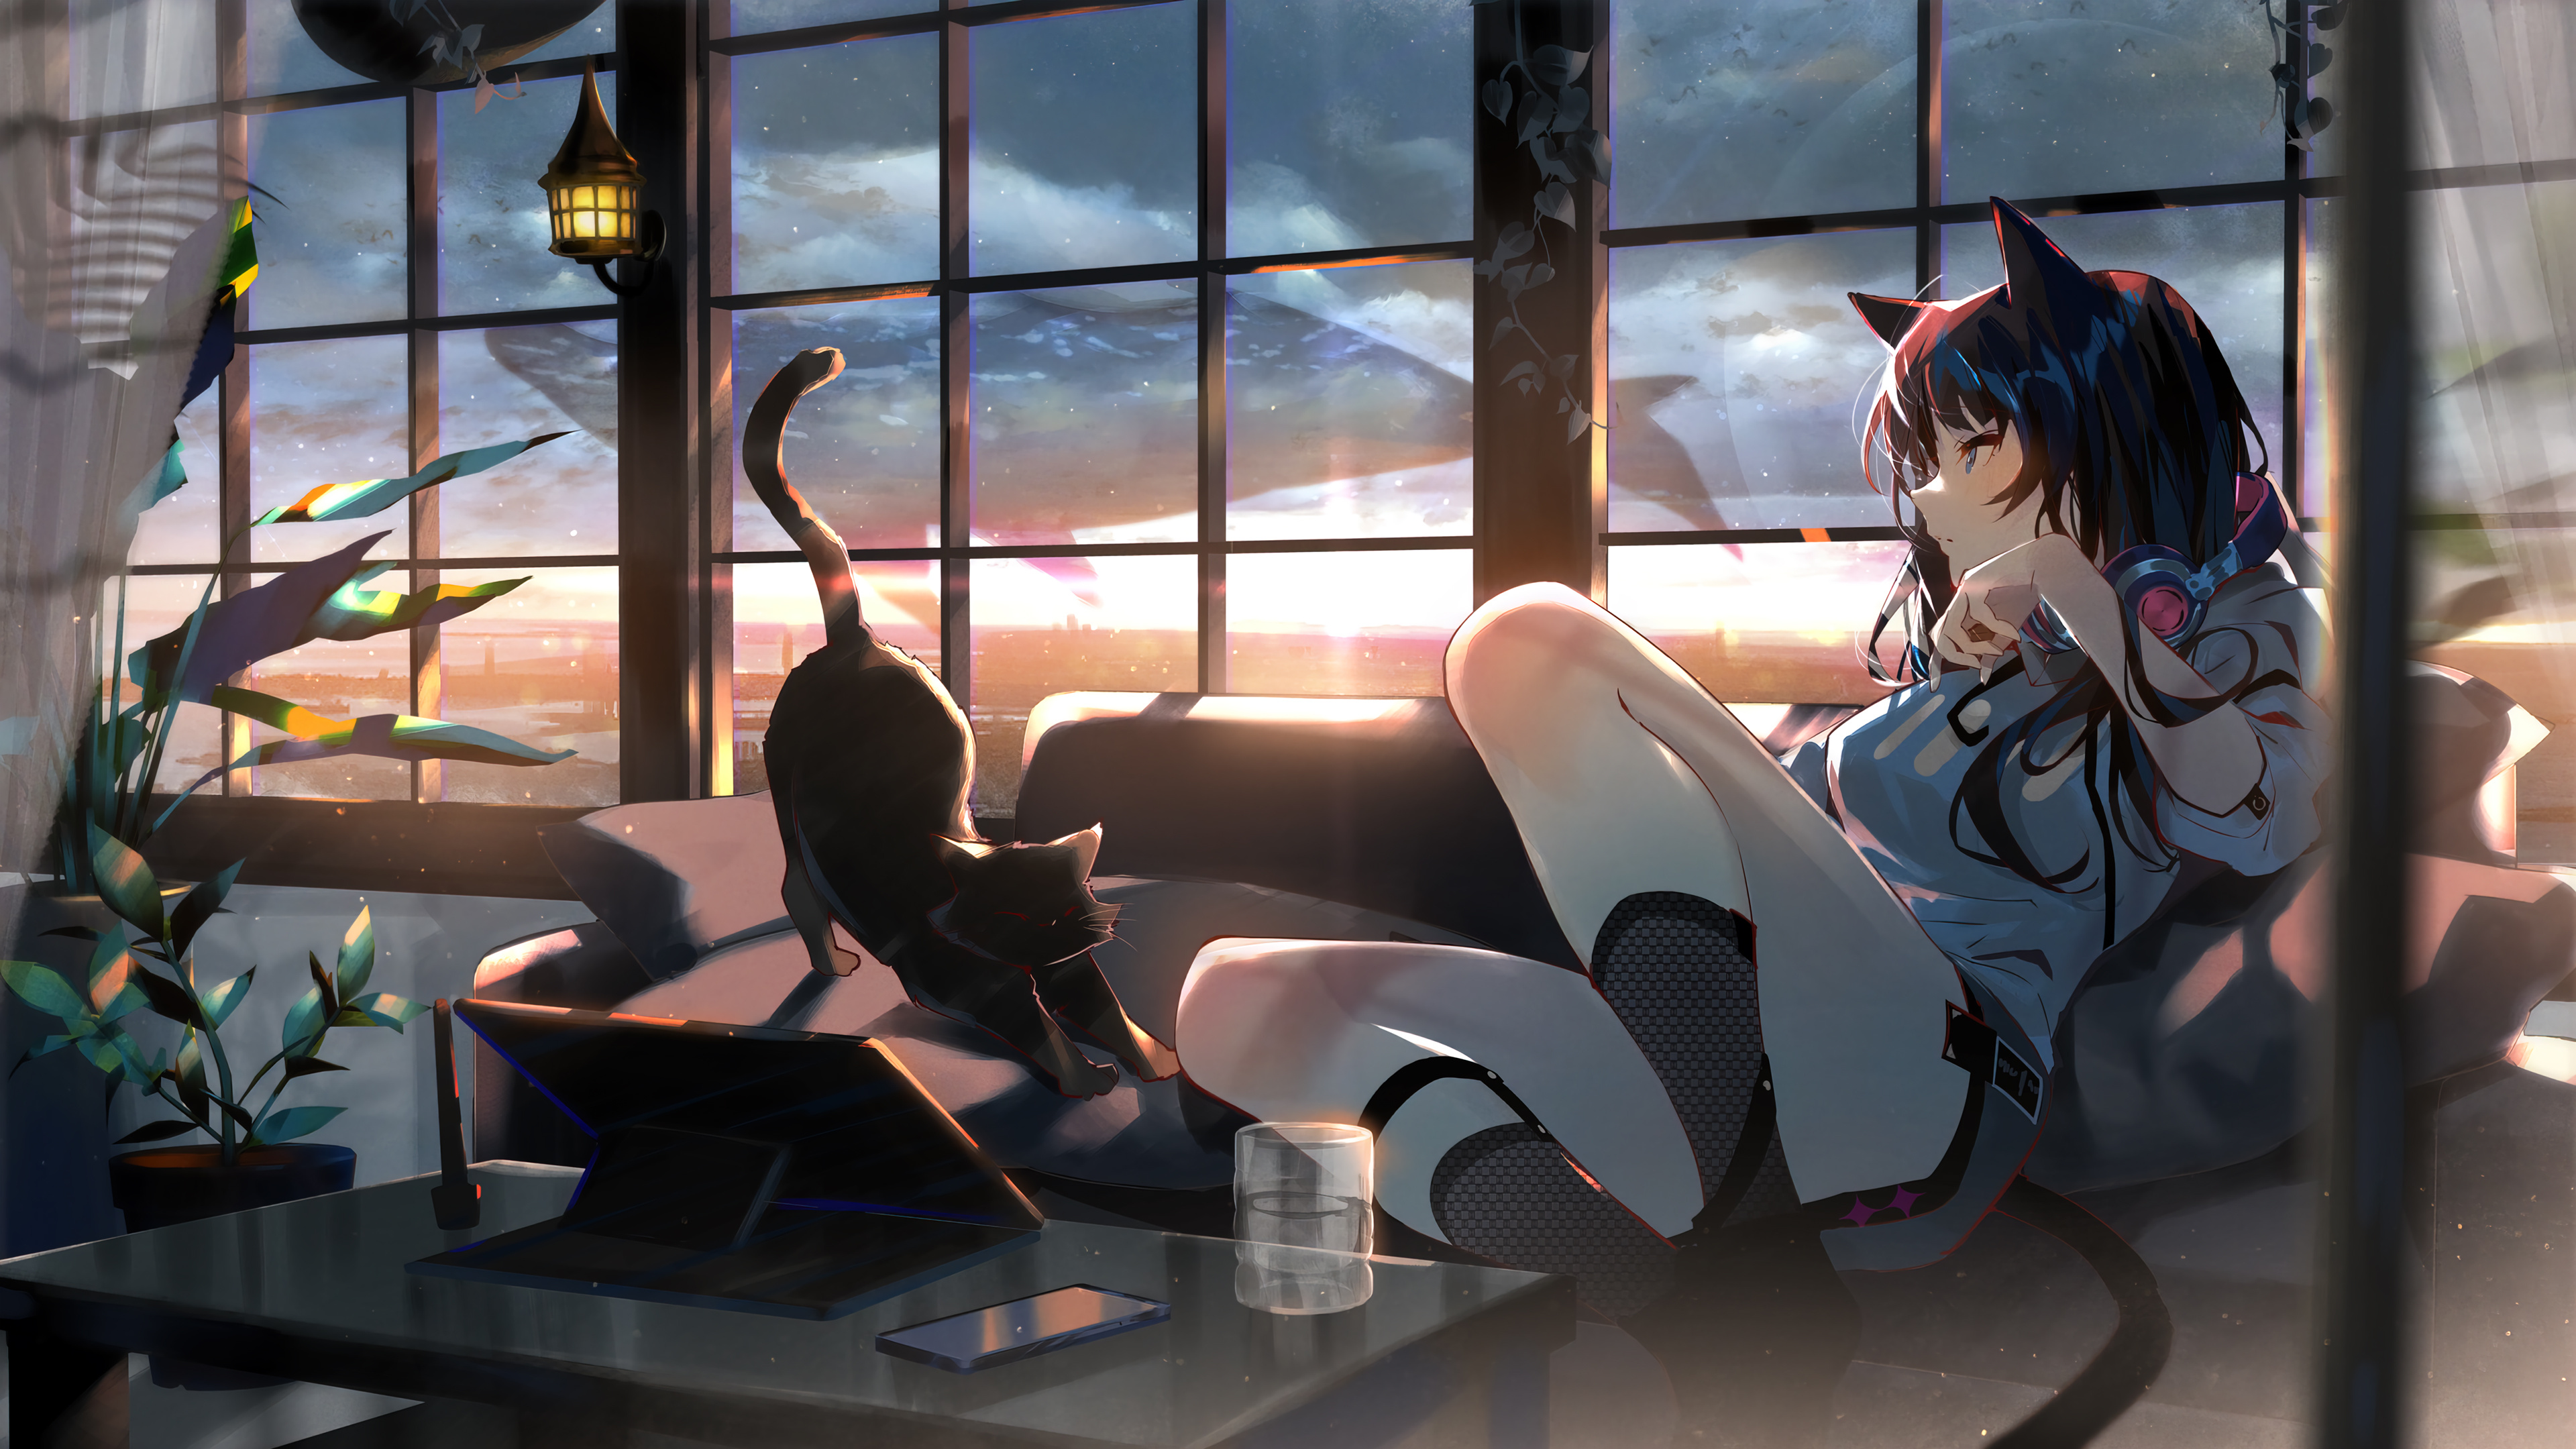 Anime Girl Cat Sunset Wallpaper 4K PC Desktop 4810b 3840x2160